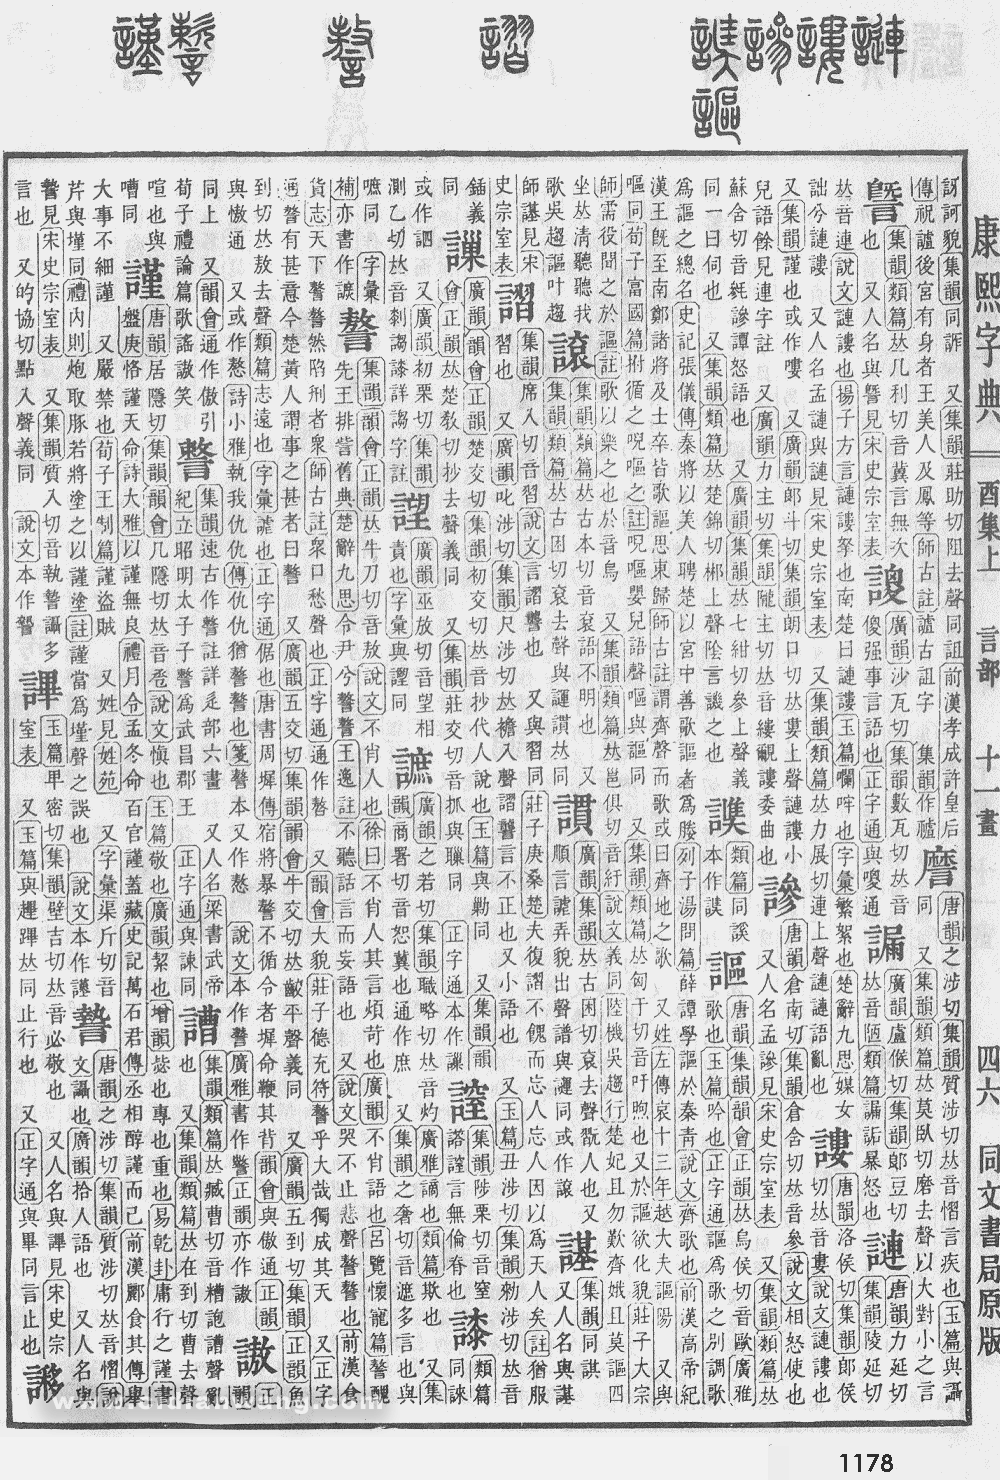 康熙字典掃描版第1178頁